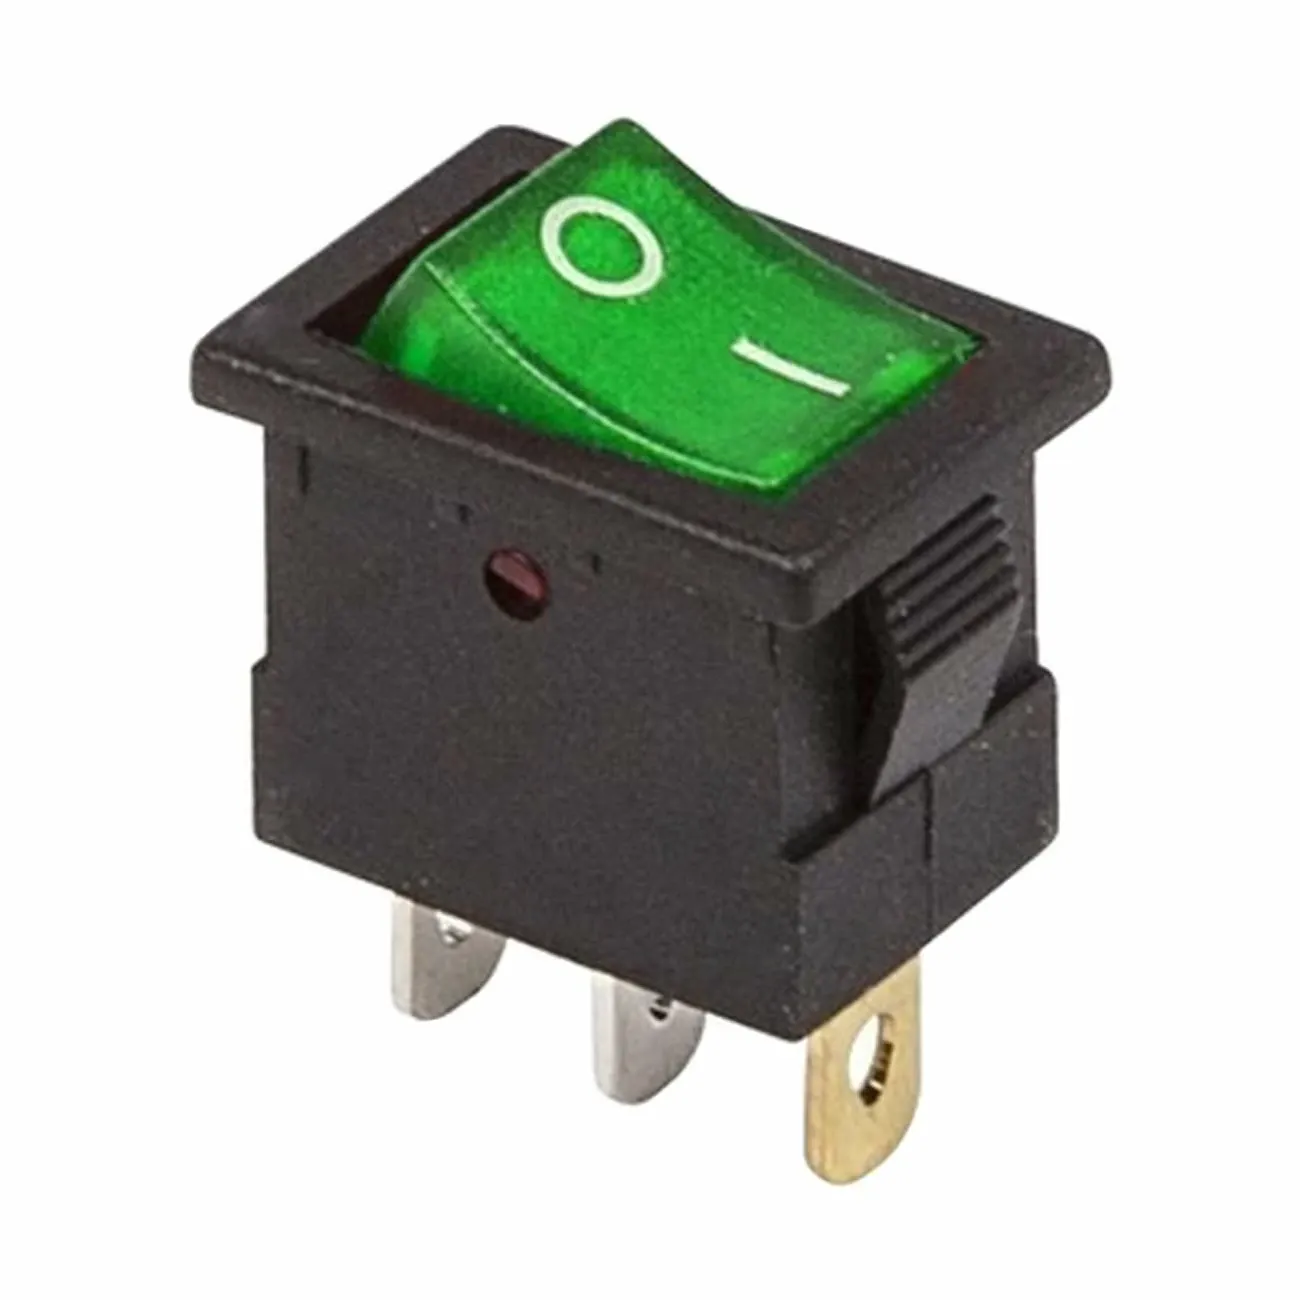 Выключатель клавишный 12v 15а (3с) on-off зеленый с подсветкой Mini Rexant. Выключатель клавишный 12v 15а (3с) on-off красный с подсветкой Mini Rexant. Переключатель клавишный 36-2170 Rexant. Выключатель клавишный 12v 15а (3с) on-off зеленый с подсветкой Mini Rexant (10/1000). 12v 15a